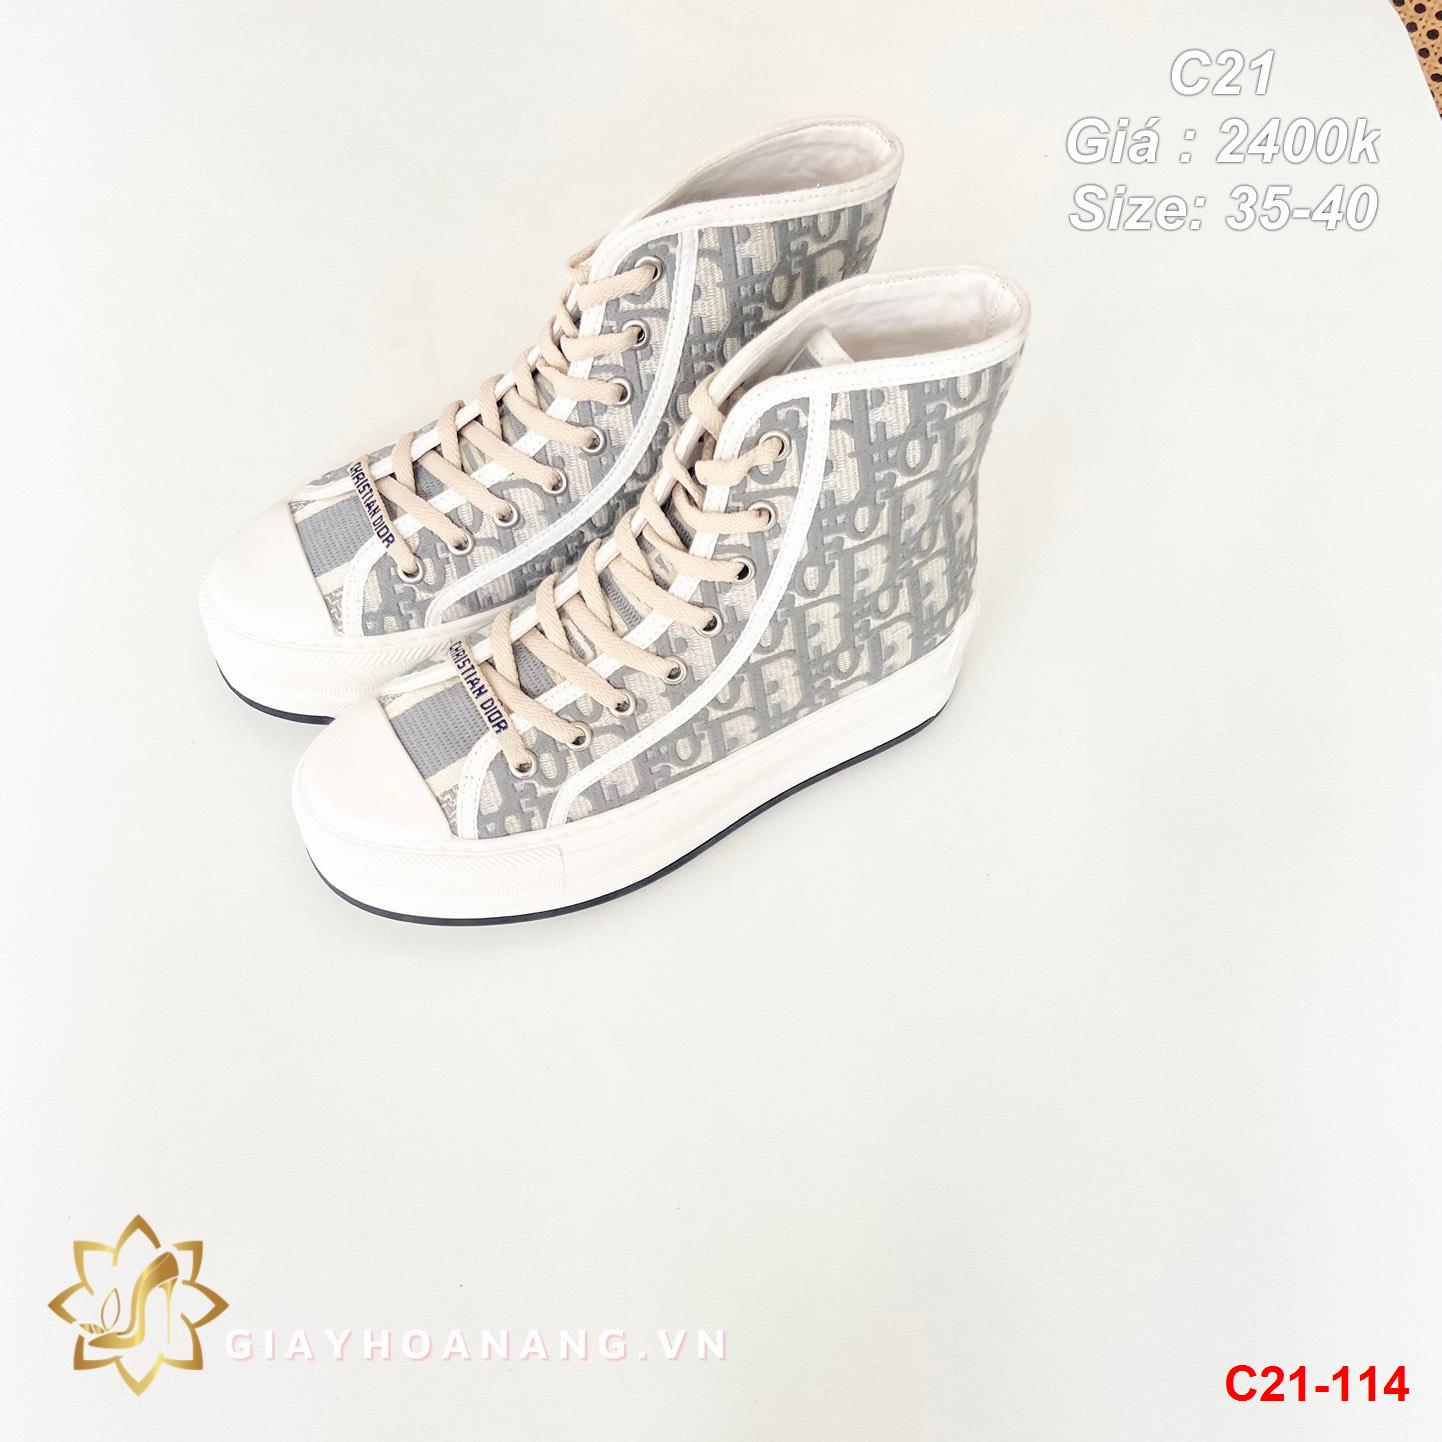 C21-114 Dior giày thể thao siêu cấp